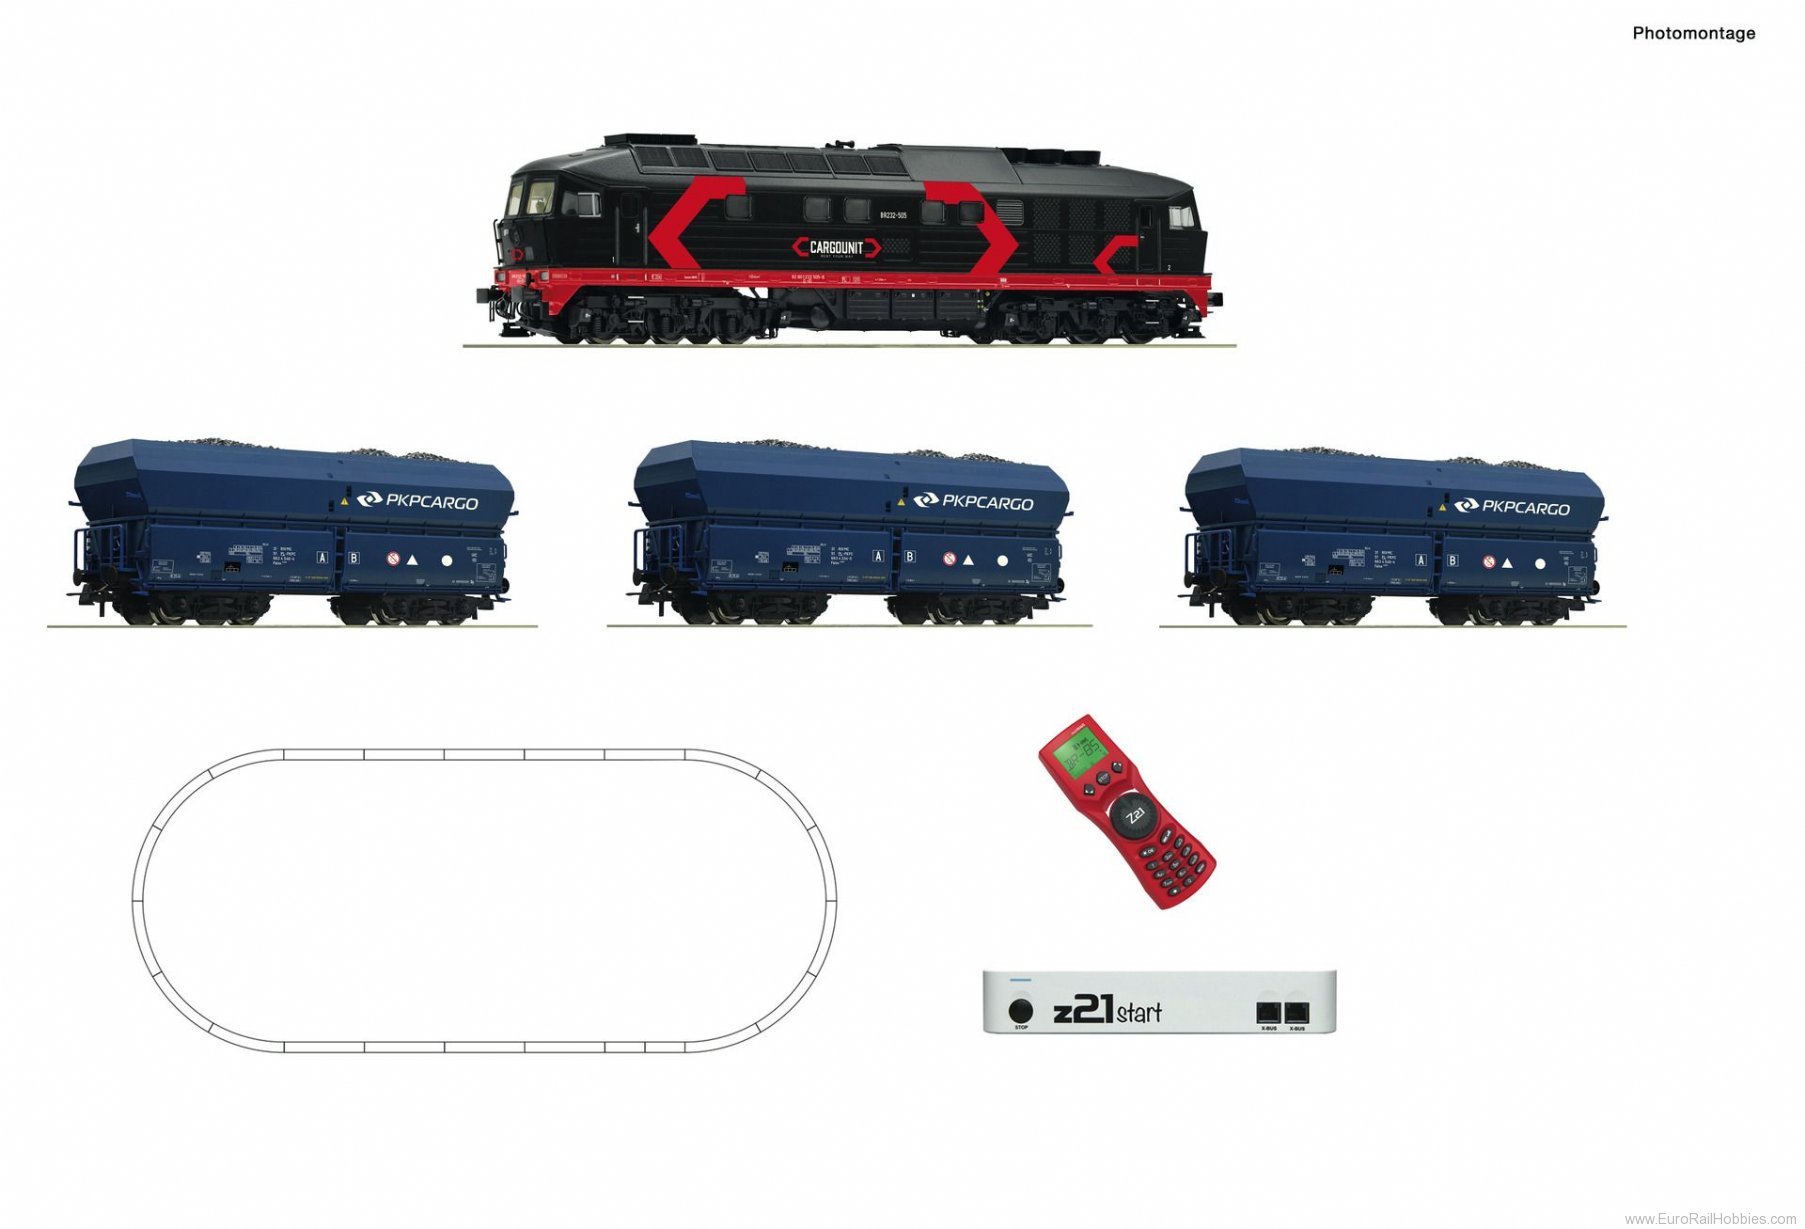 Roco 51342 z21 start digital set: Diesel locomotive clas